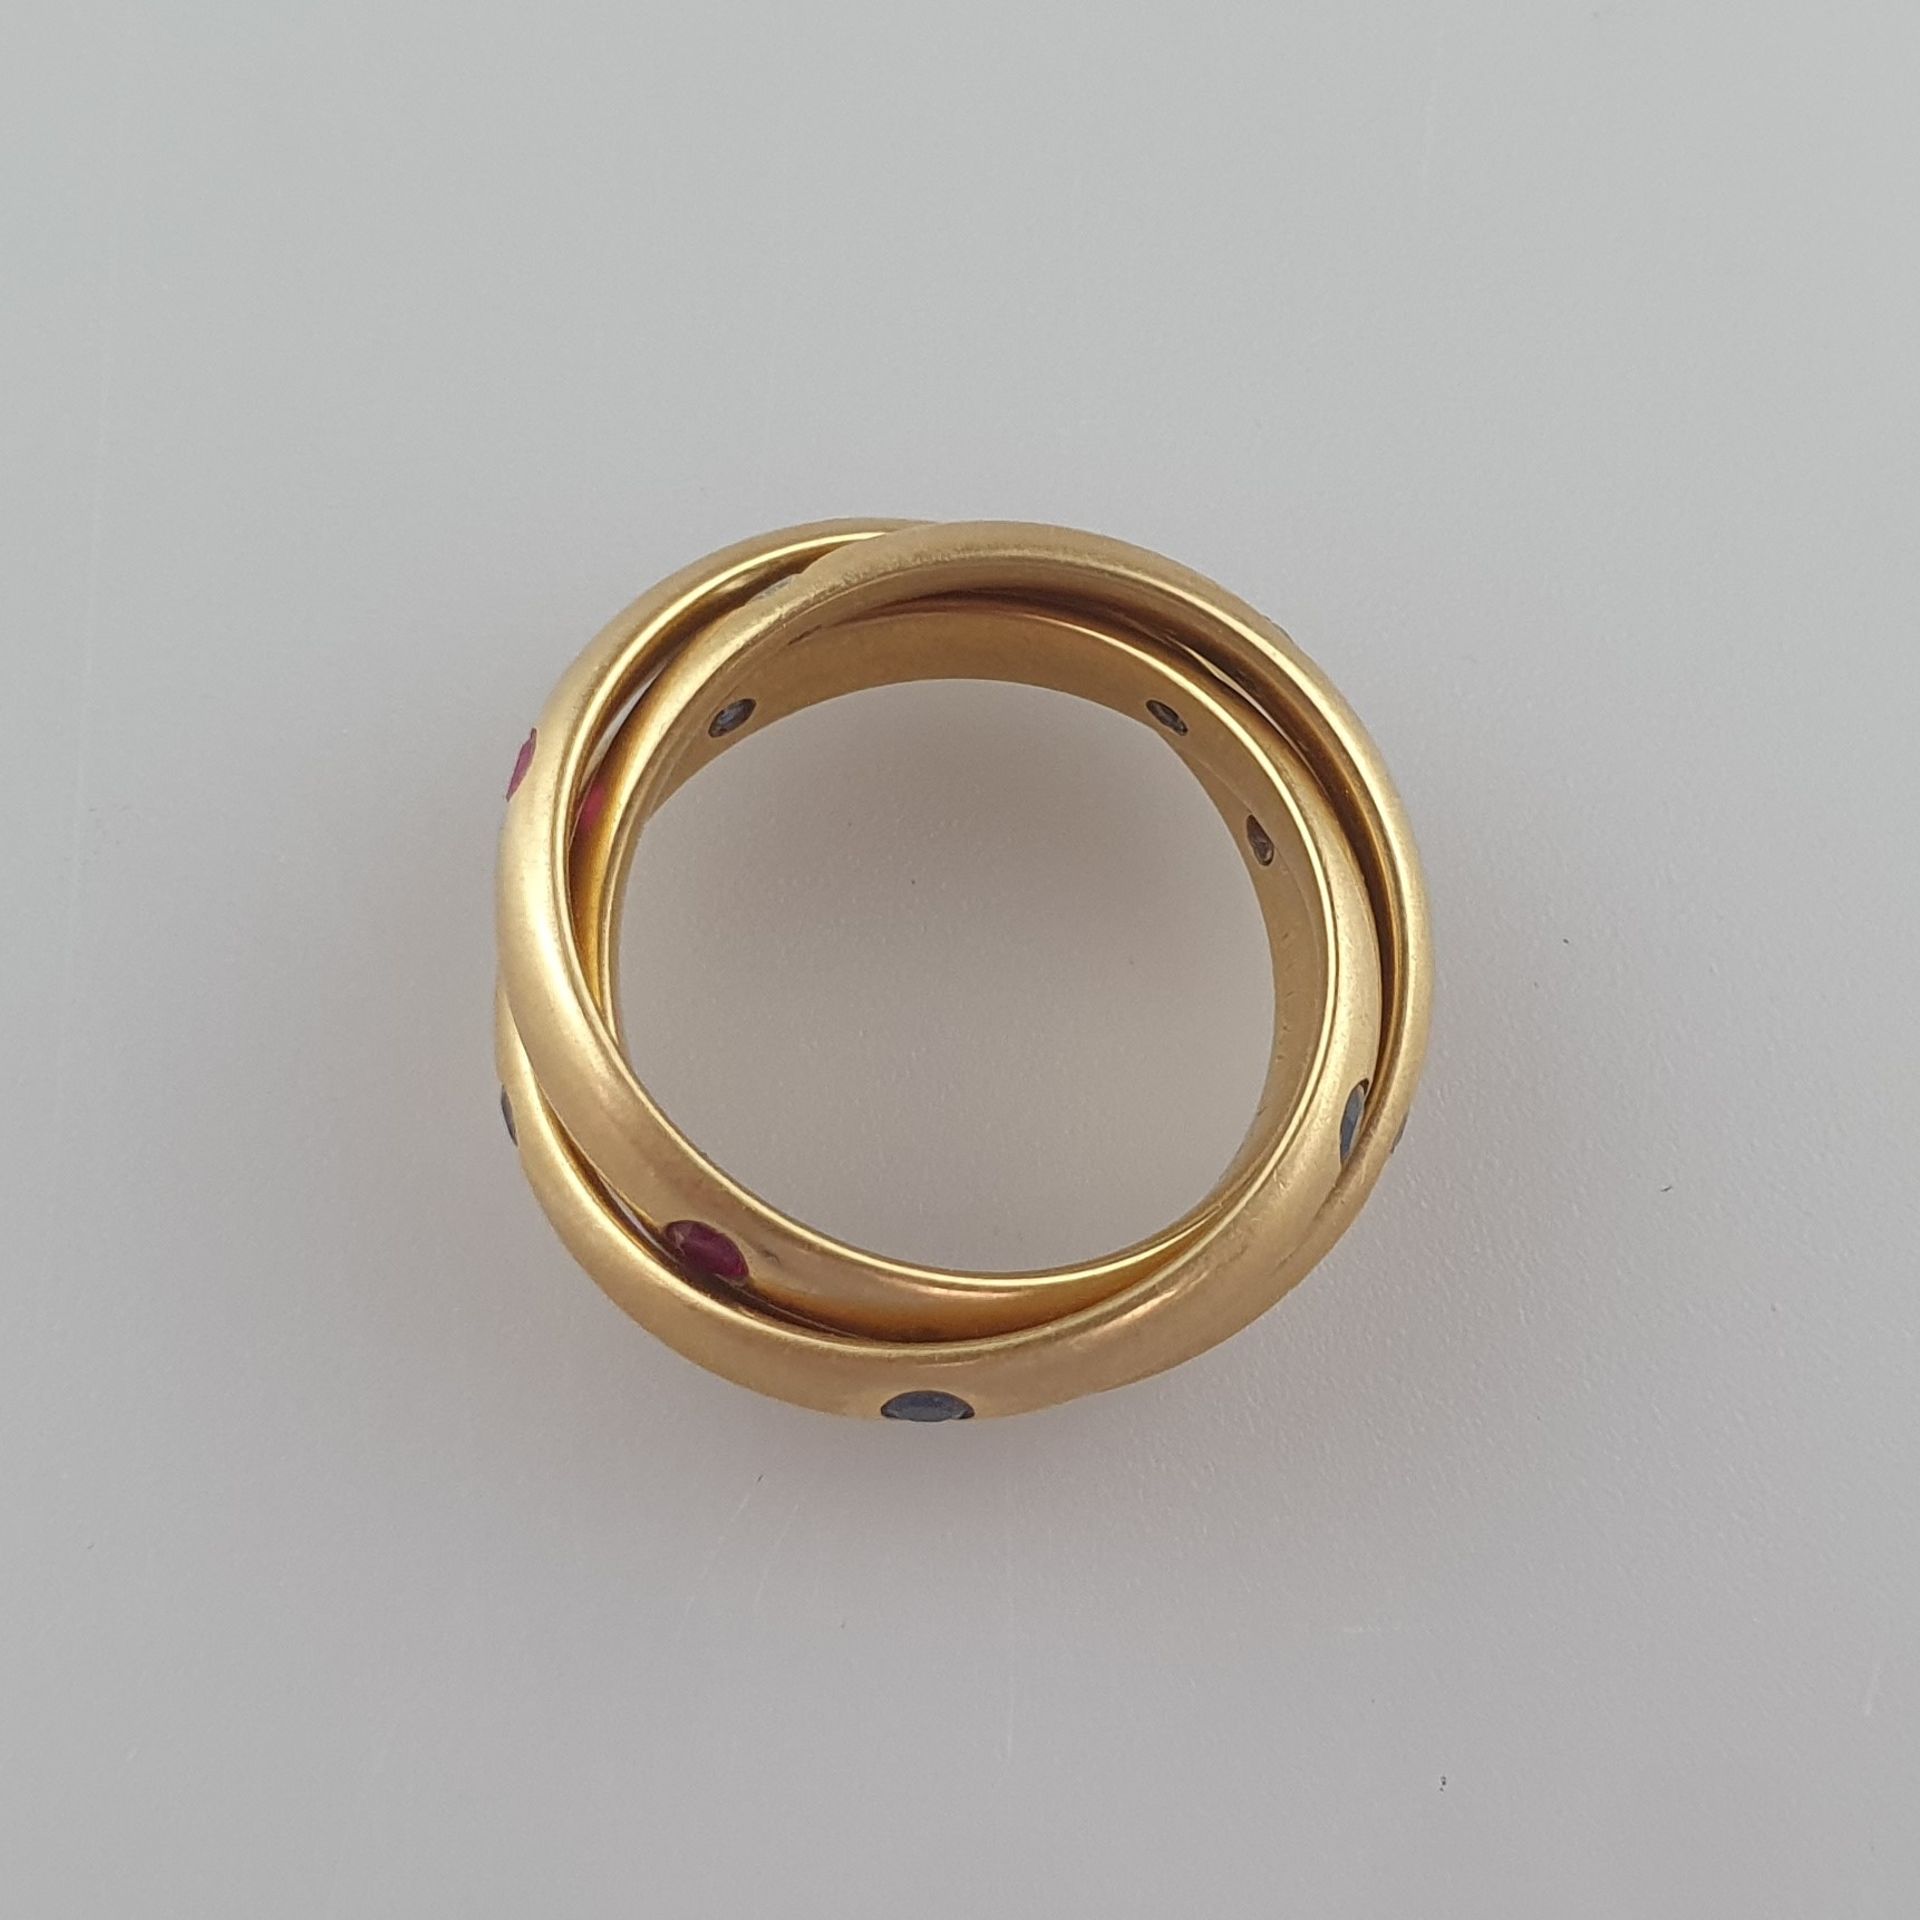 CARTIER-Ring "Trinity"- Gelbgold 750/000, die drei beweglich ineinander verschlungene Ringe von ca. - Bild 4 aus 6